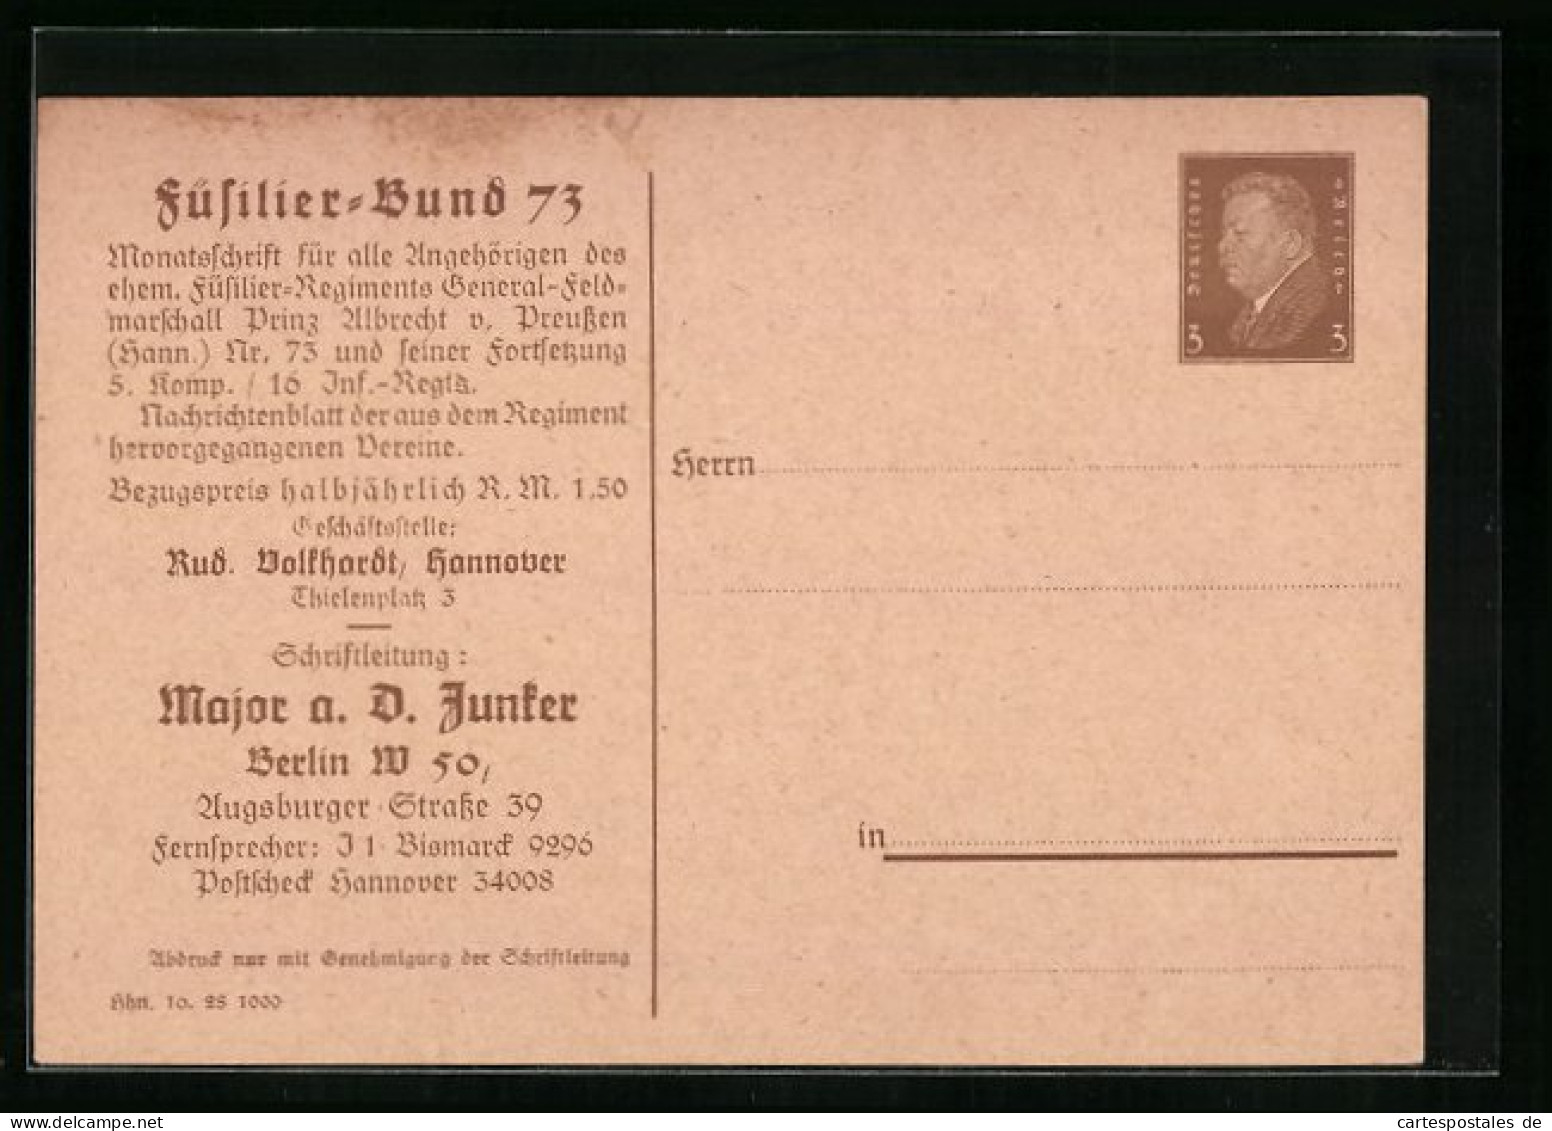 AK Ganzsache PP106B3: Karte Des Füsilier-Bund 73, Schriftleitung Major A. D. Junker  - Regimente